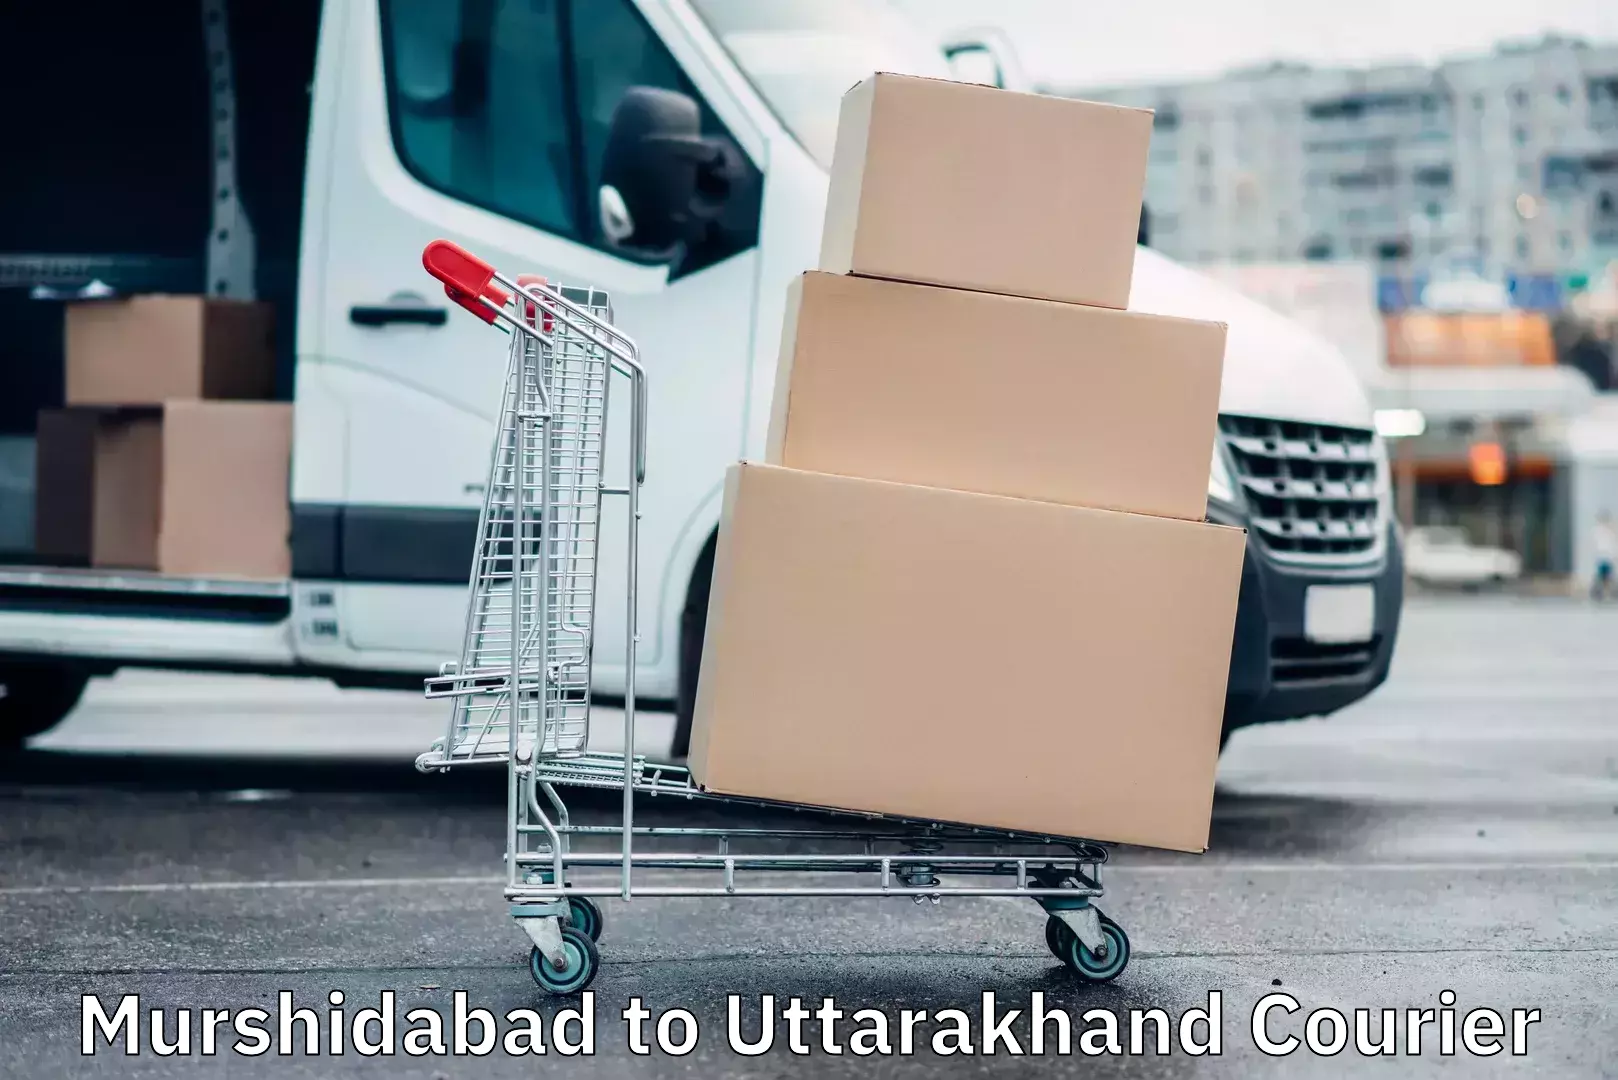 Customizable delivery plans Murshidabad to Uttarakhand